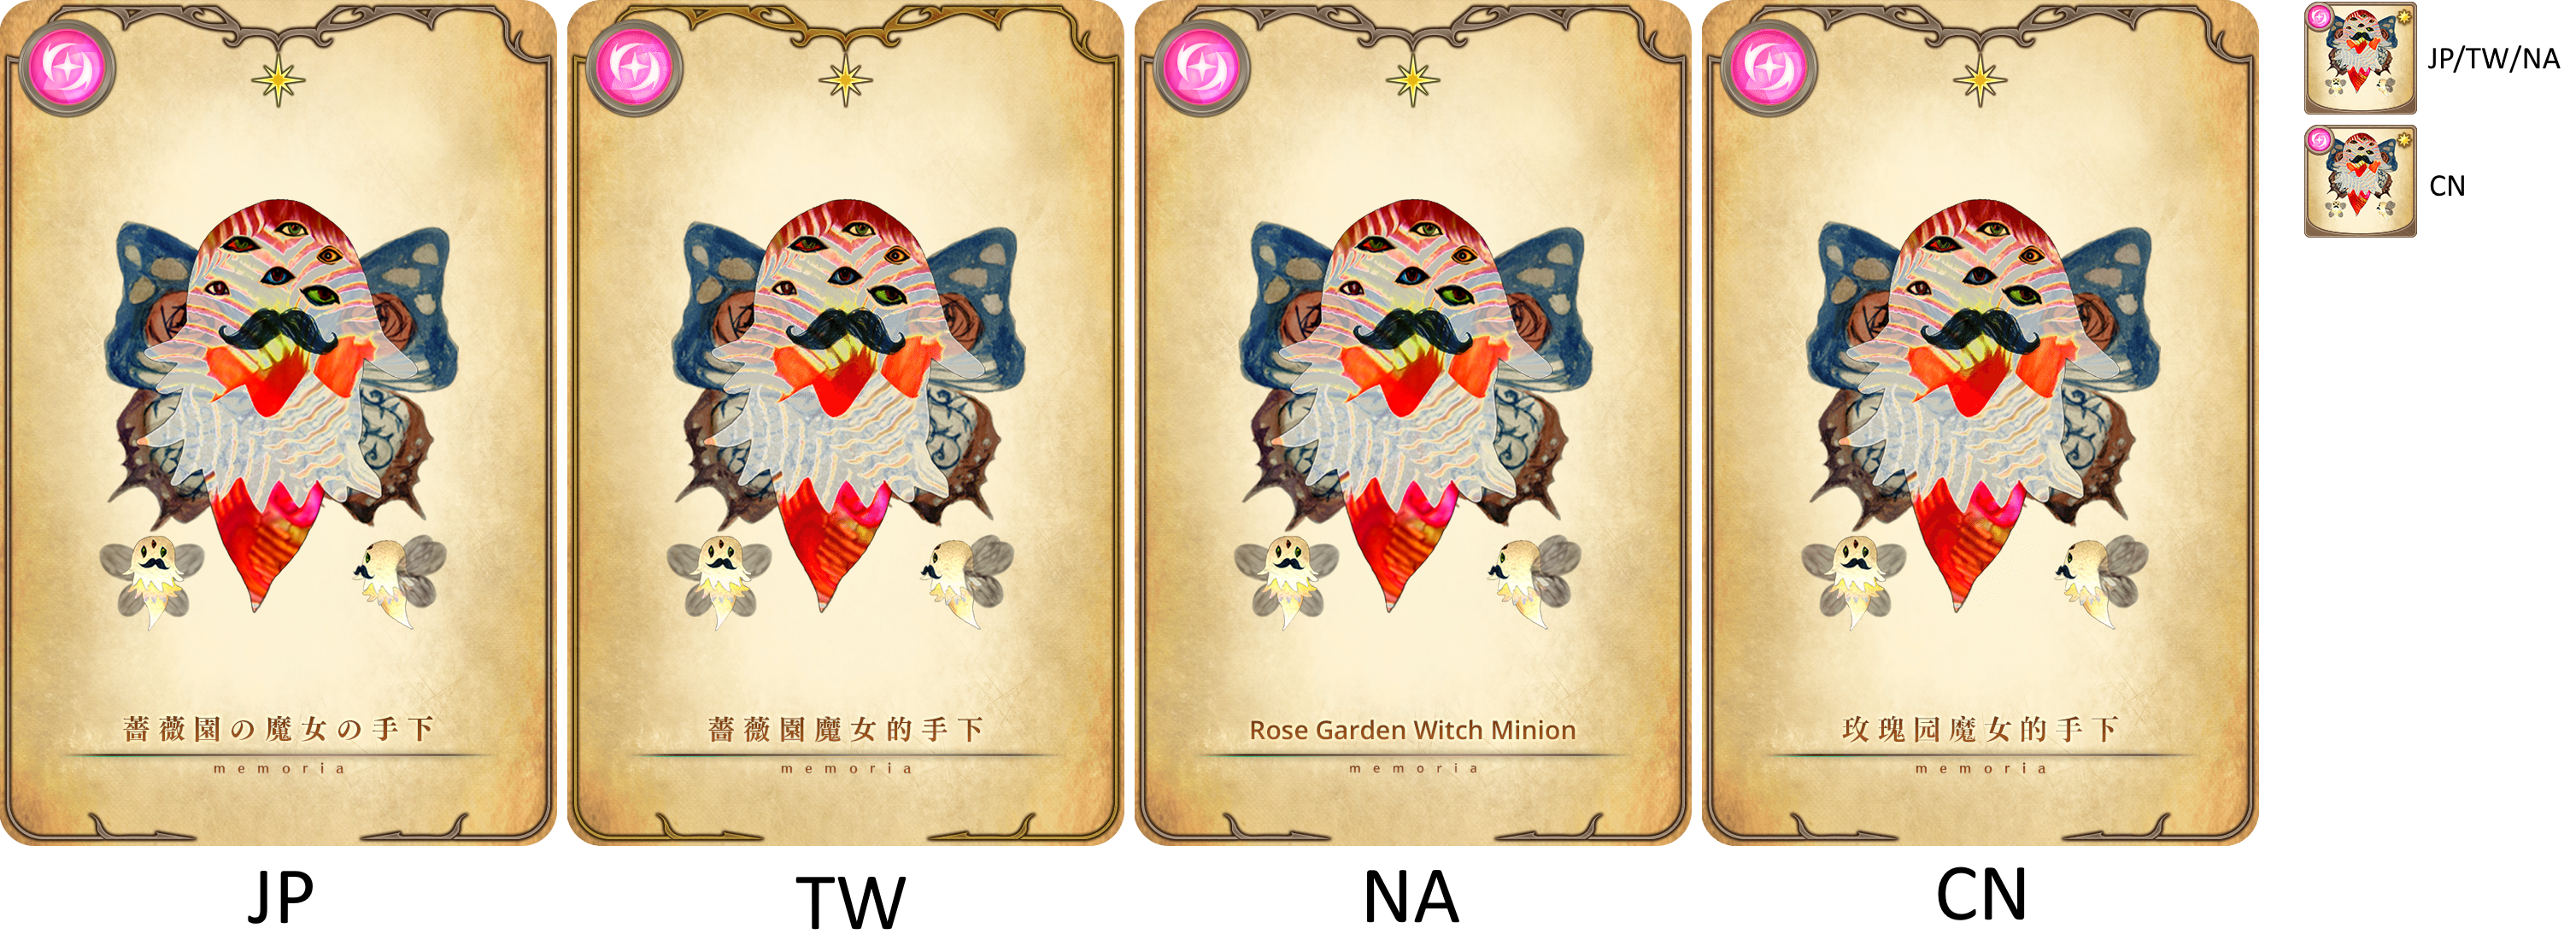 Puella Magi Madoka Magica Side Story: Magia Record - Minion of the Rose Garden Witch [memoria_1002]